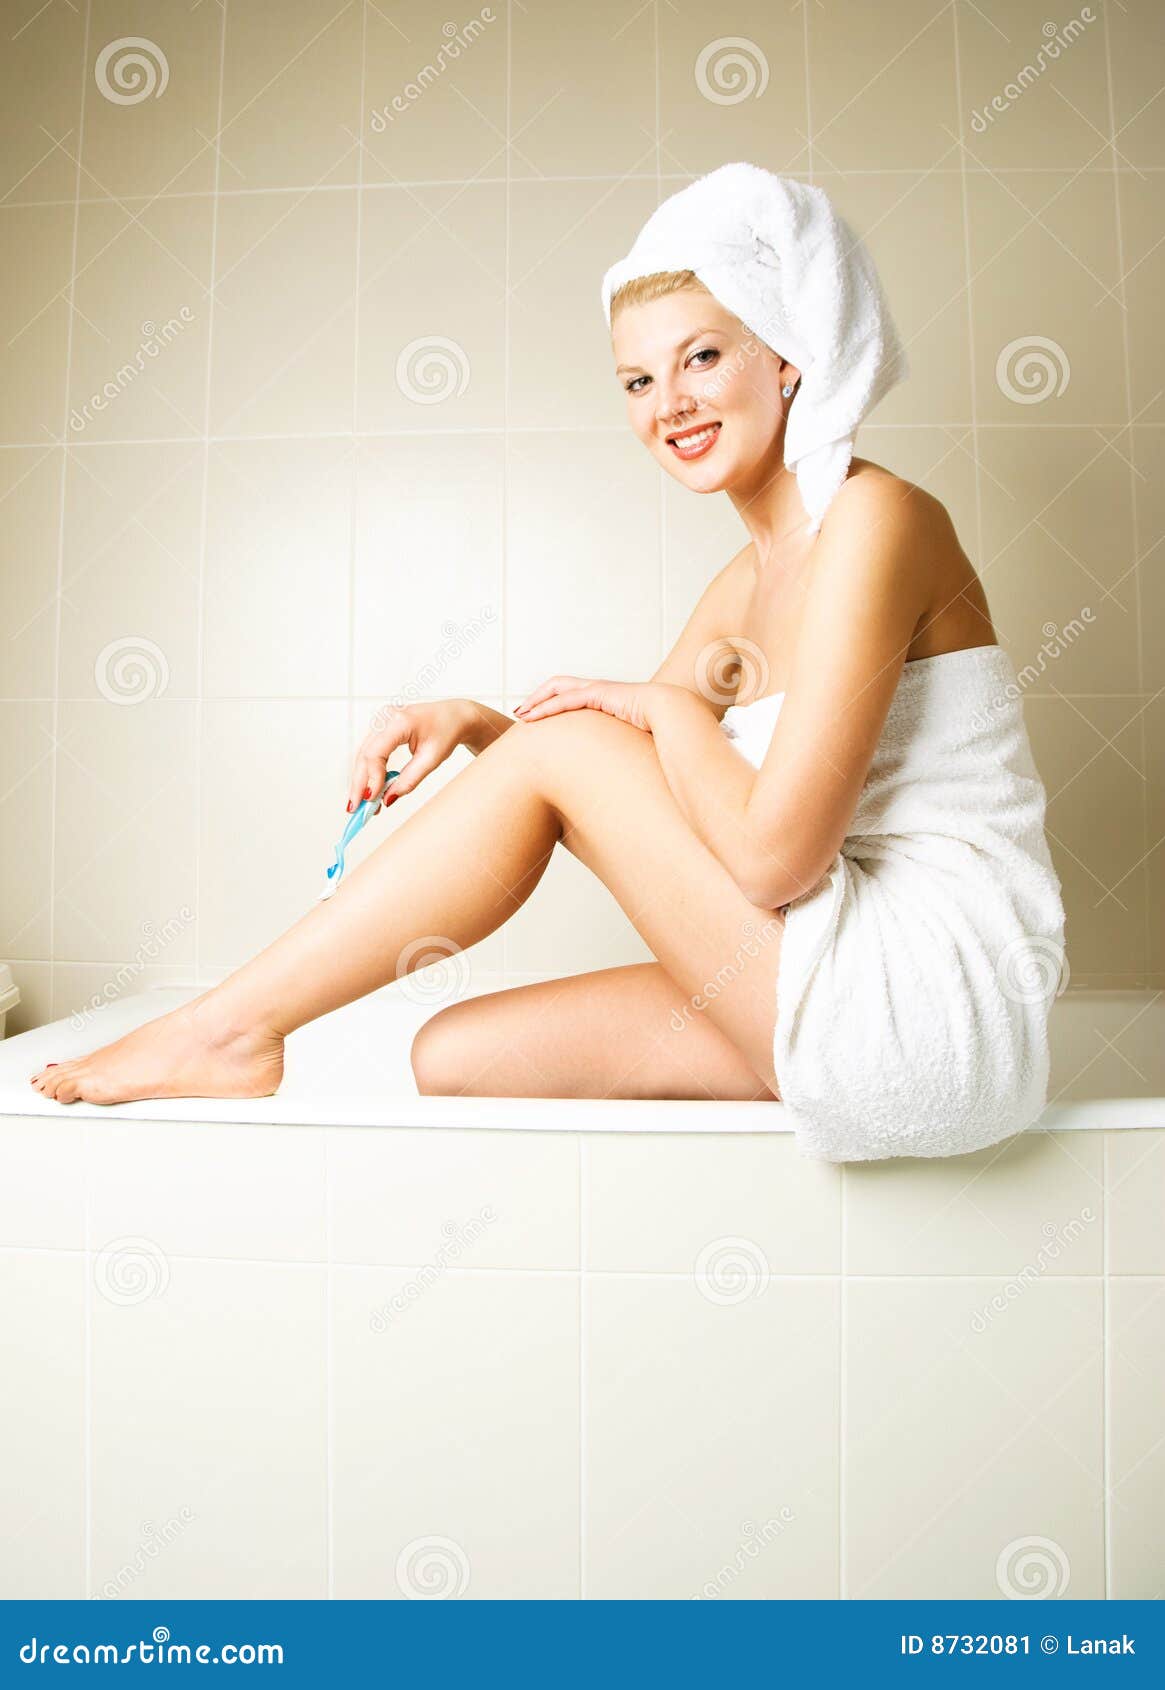 Женщина после ванной. Девушка завернутая в полотенце. Женские ноги в полотенце. Девушка в полотенце ножки. Девушка завернутая в полотенце ноги.